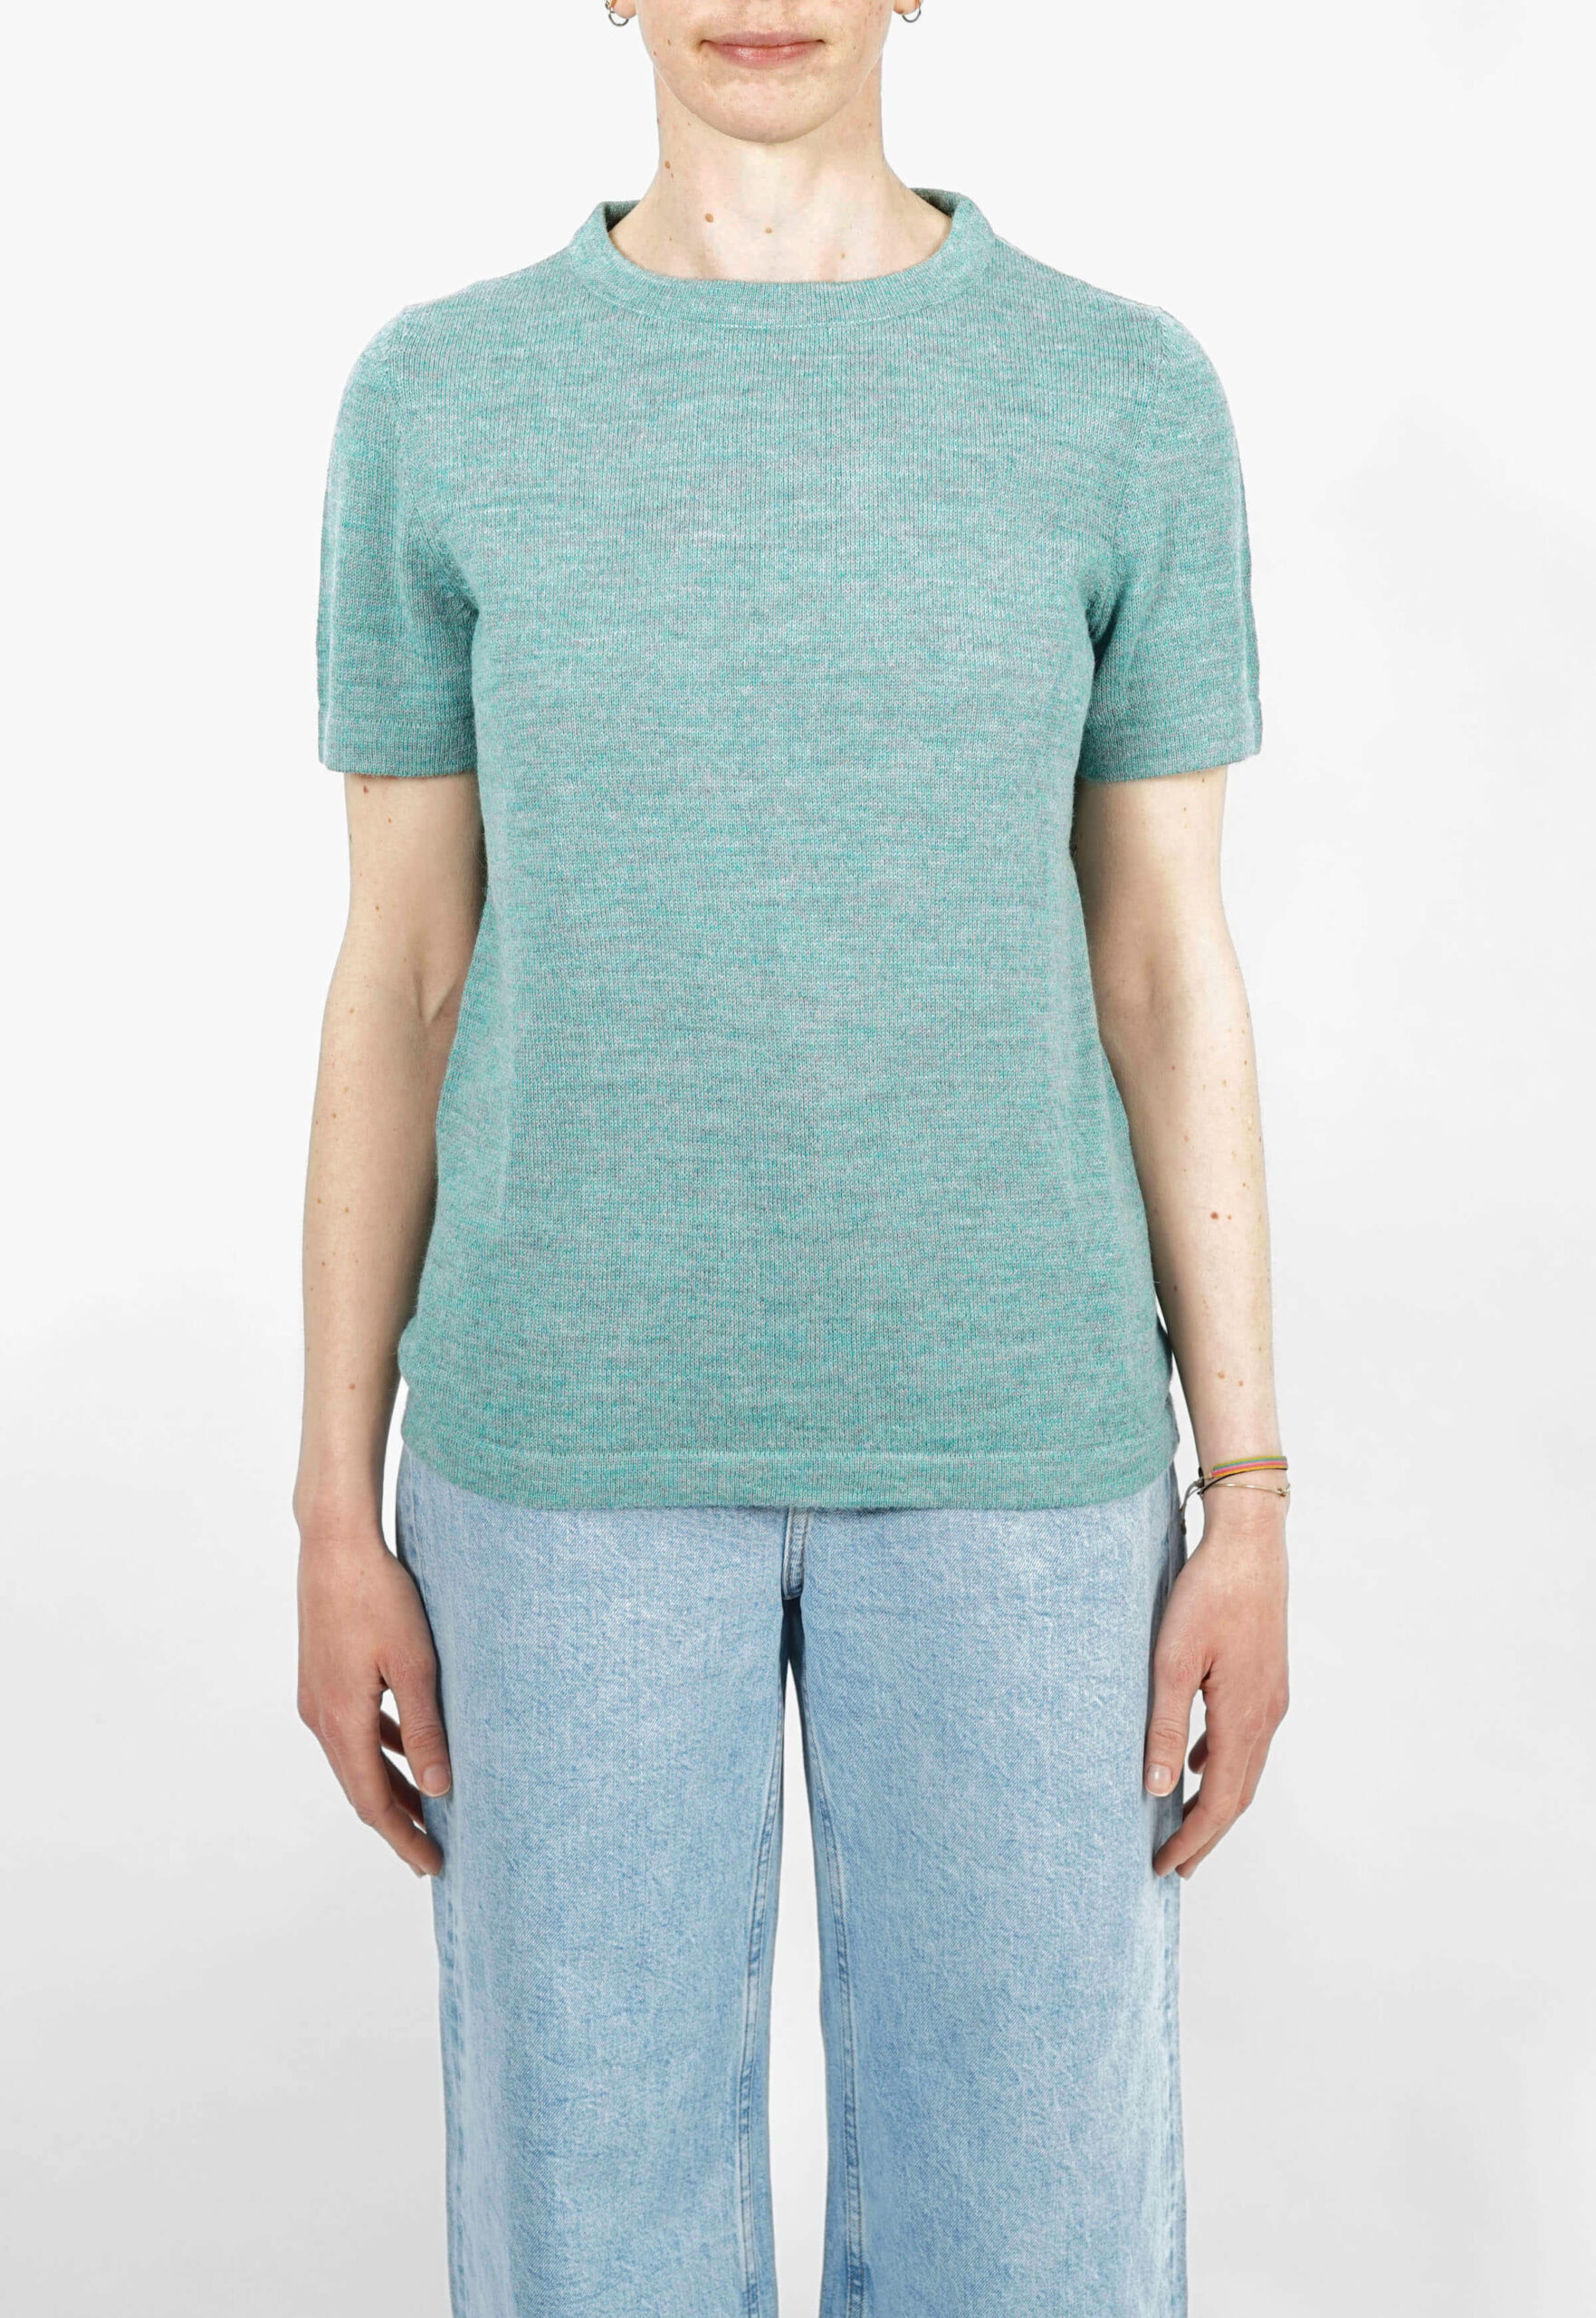 »Aqua«, ein hochwertiger Designer-Kurzarm-Pullover für Frauen, der Teil der ersten Feinstrick-Kollektion von REH (GERMANY) ist.